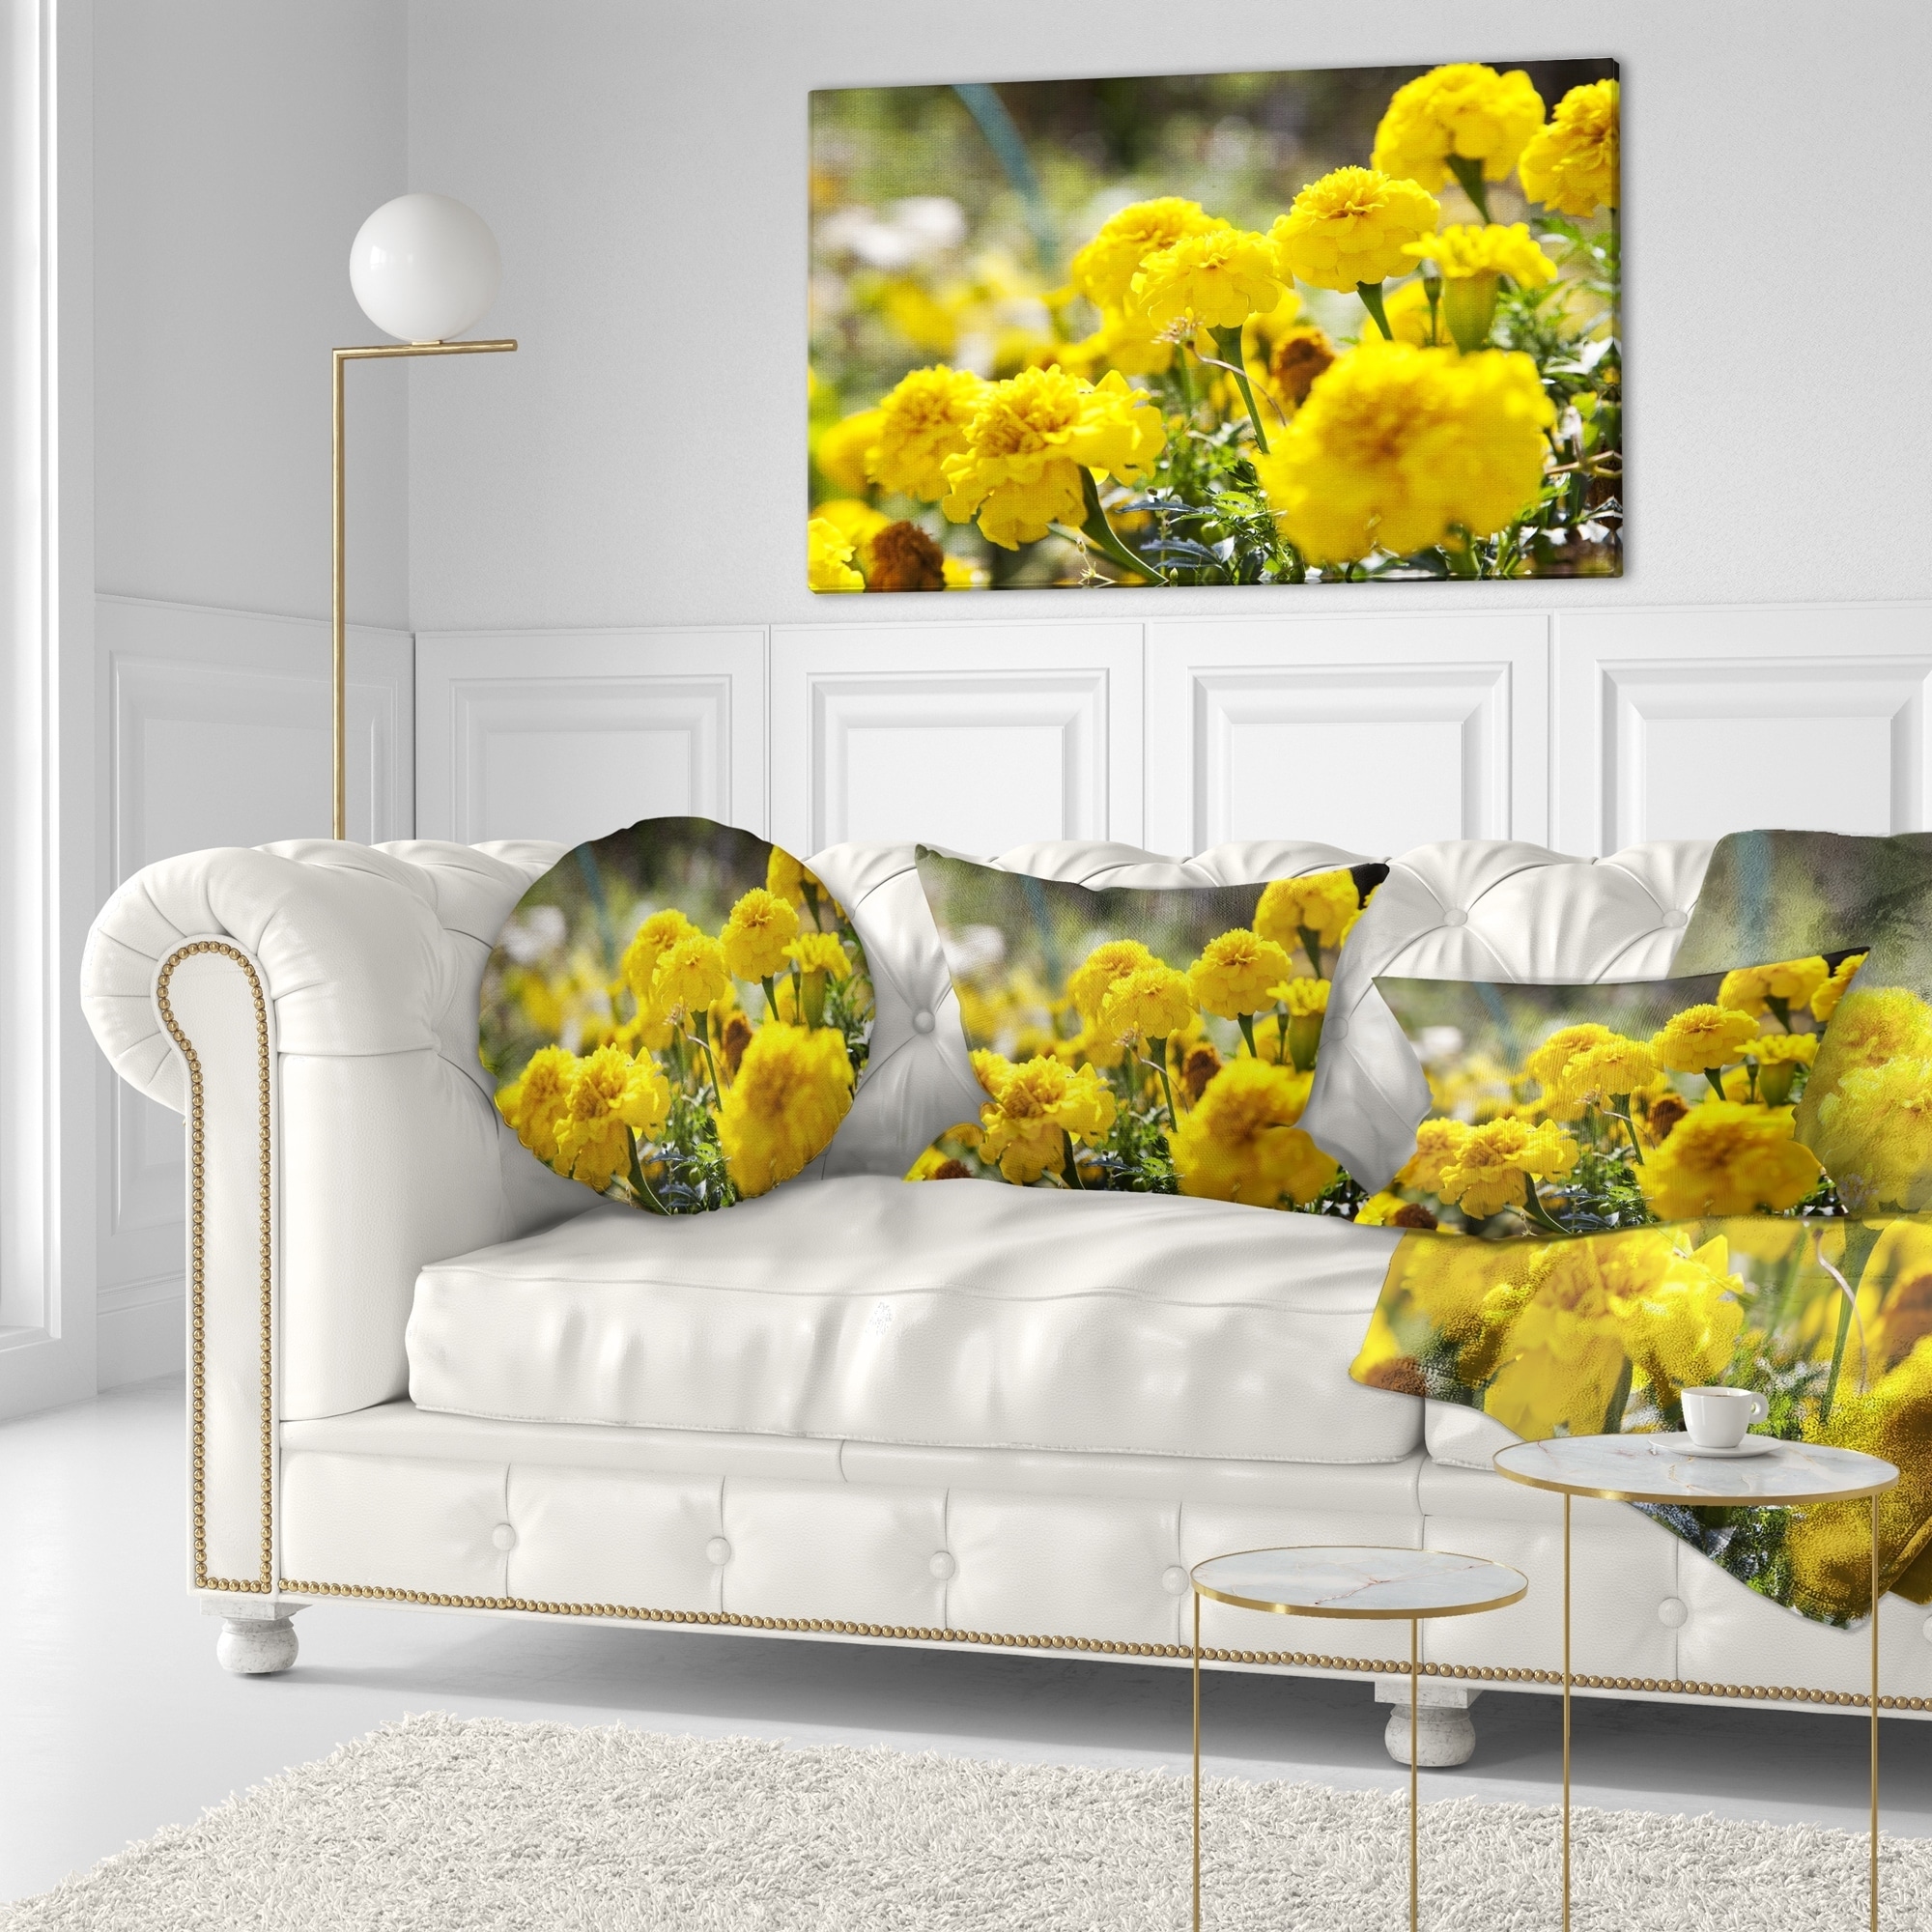 Yellow Felt Petals Pillow 18 Inch *P, PL-7926